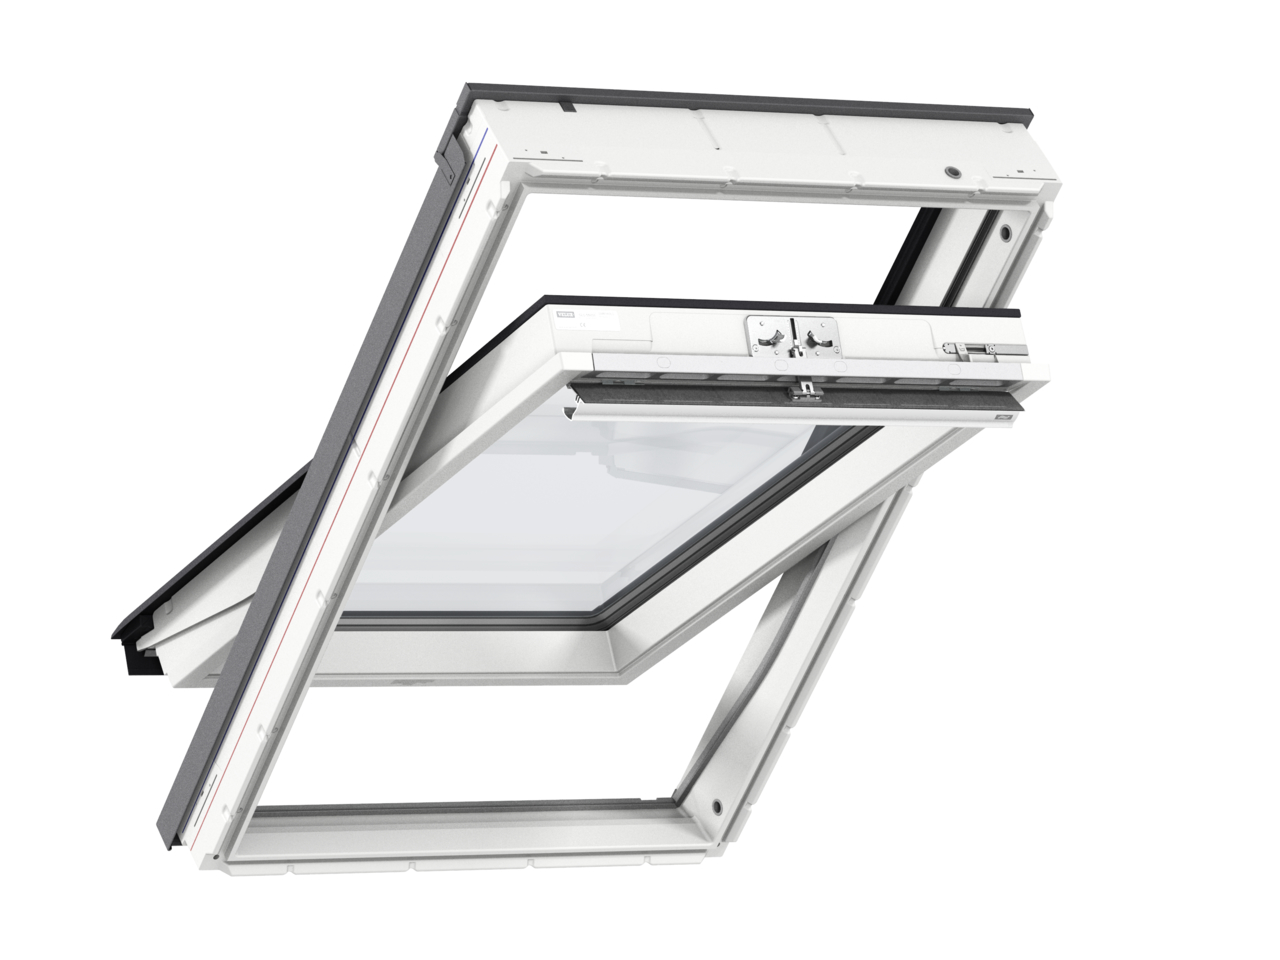 Мансардное двухкамерное белое окно Velux (Велюкс) GLU MK10 0061 78х140 см (ручка сверху), Деревянное мансардное окно в полиуретане с двухкамерным стеклопакетом GLU 0061 MK10 Окно 78*160 см, Velux